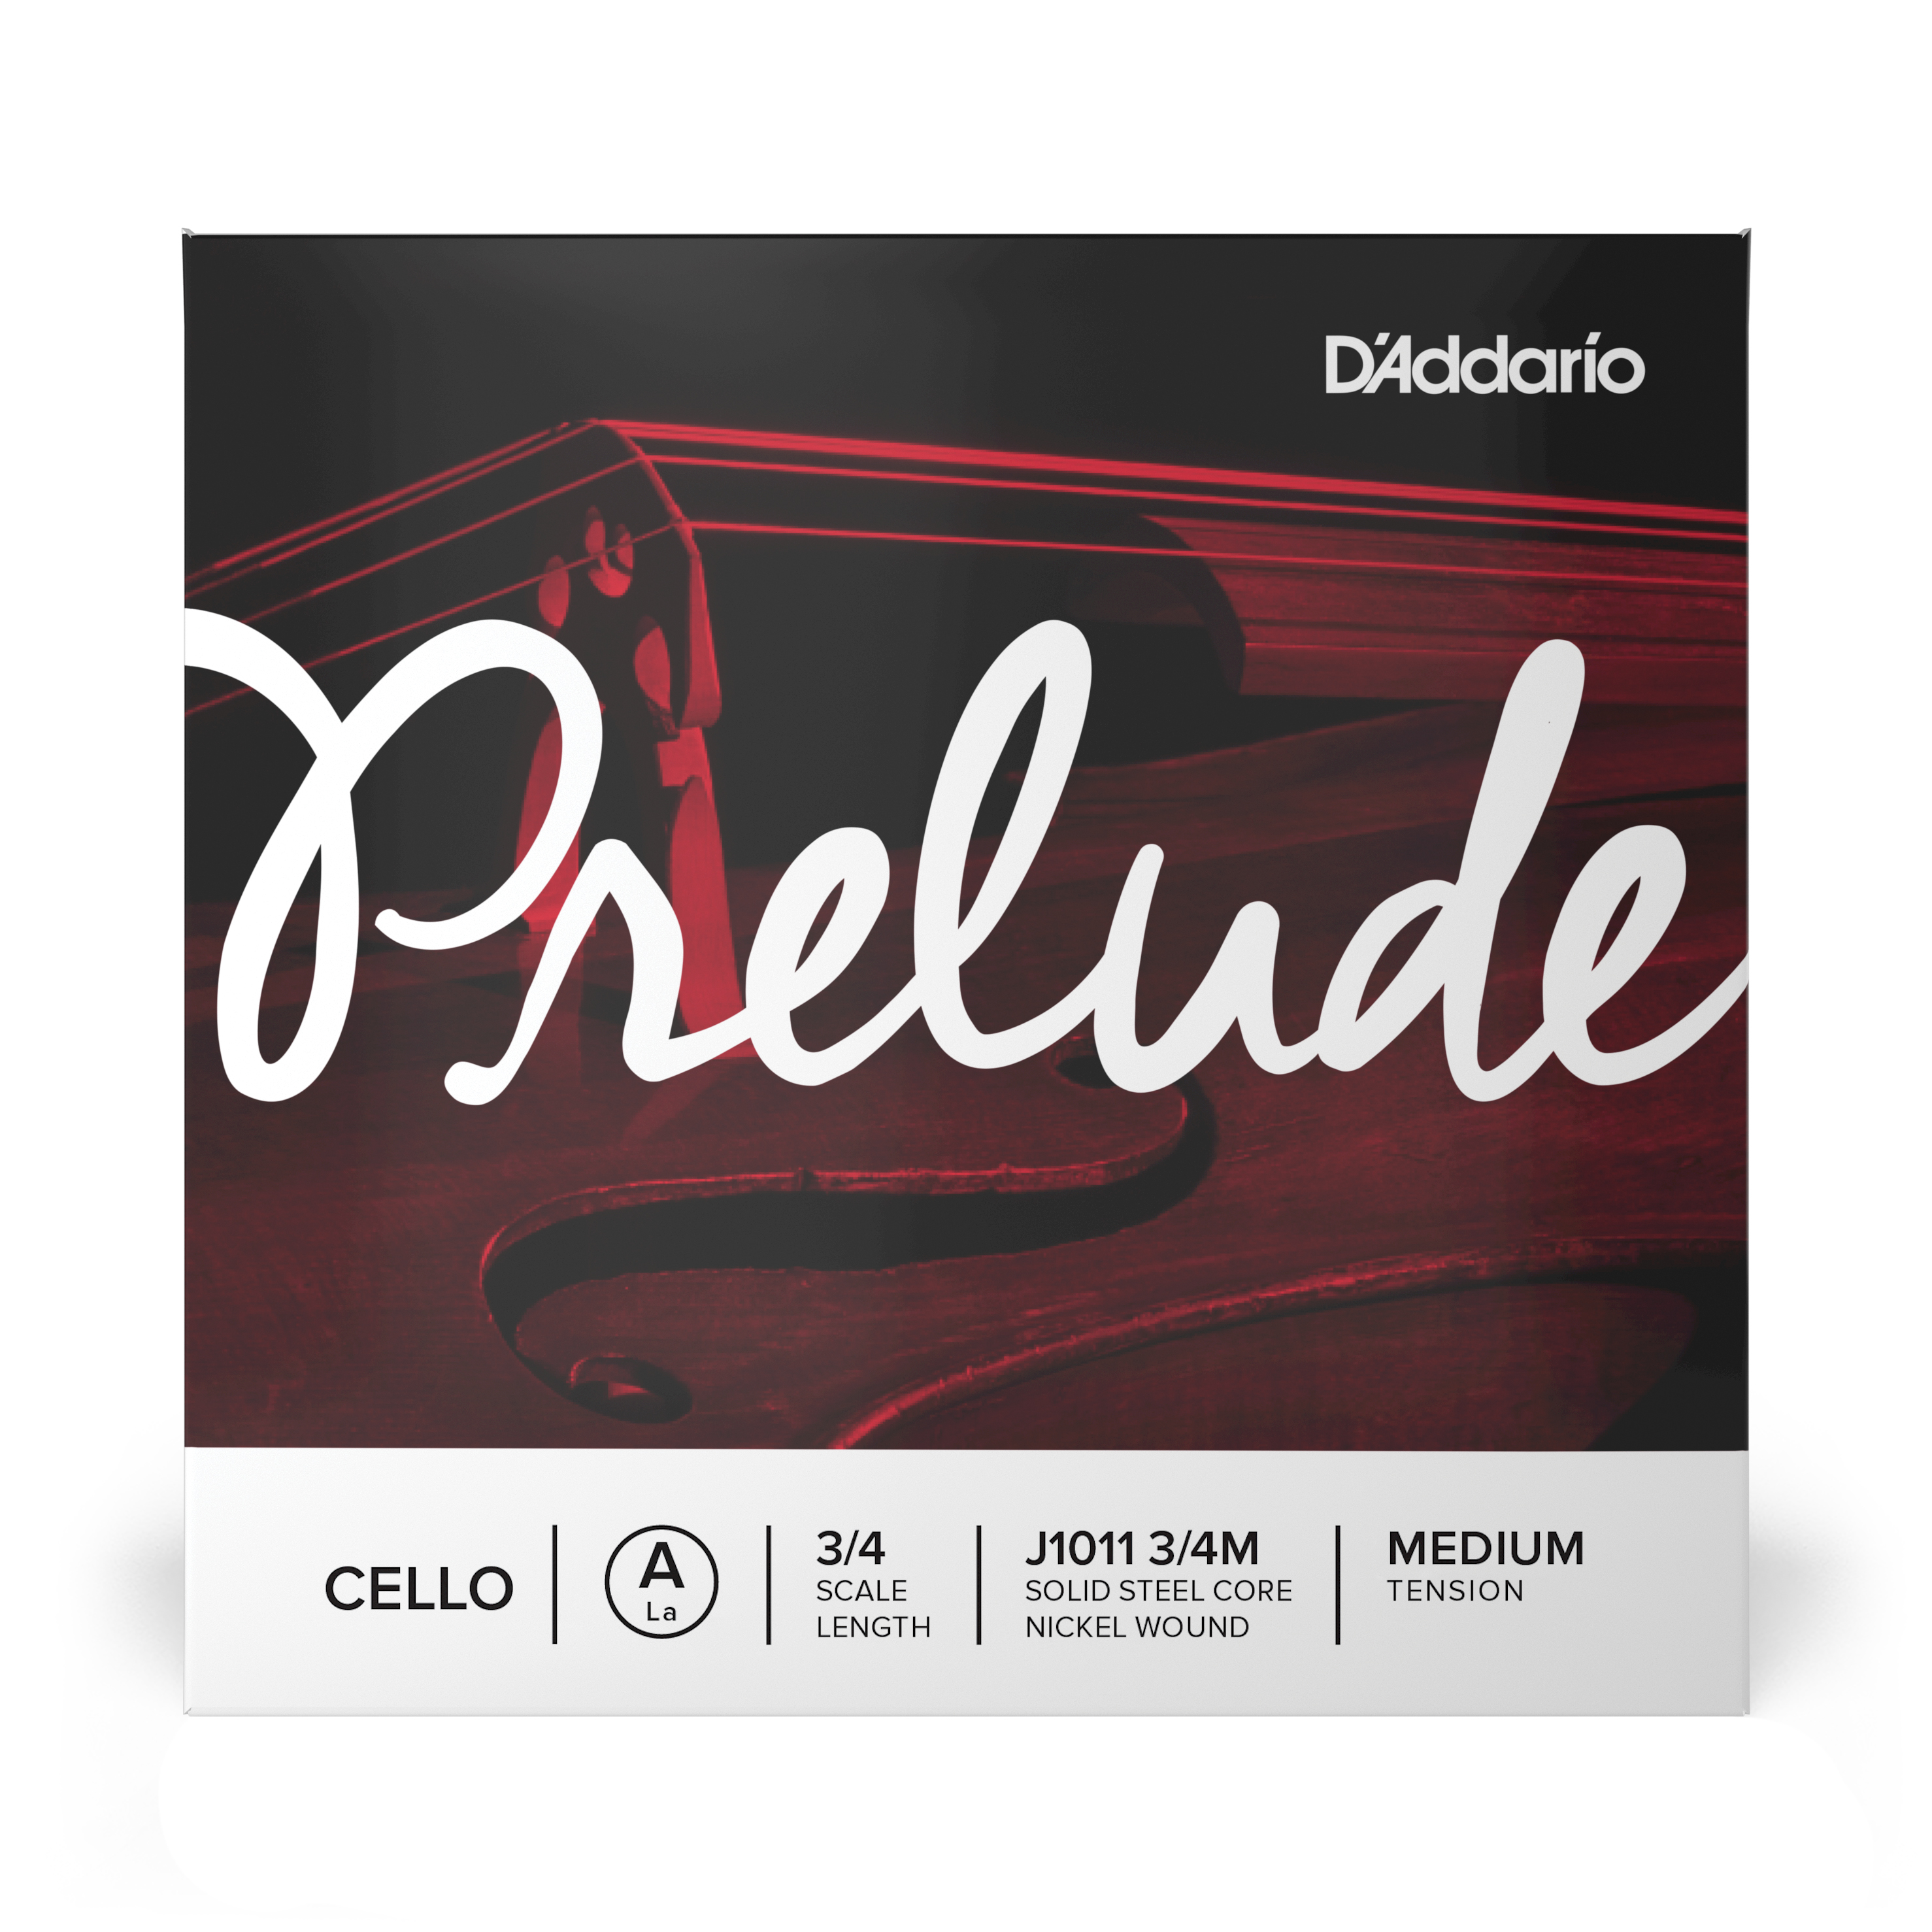 Daddario orchestral it J1011 3/4m corda singola la d'addario prelude per violoncello, scala 3/4, tensione media